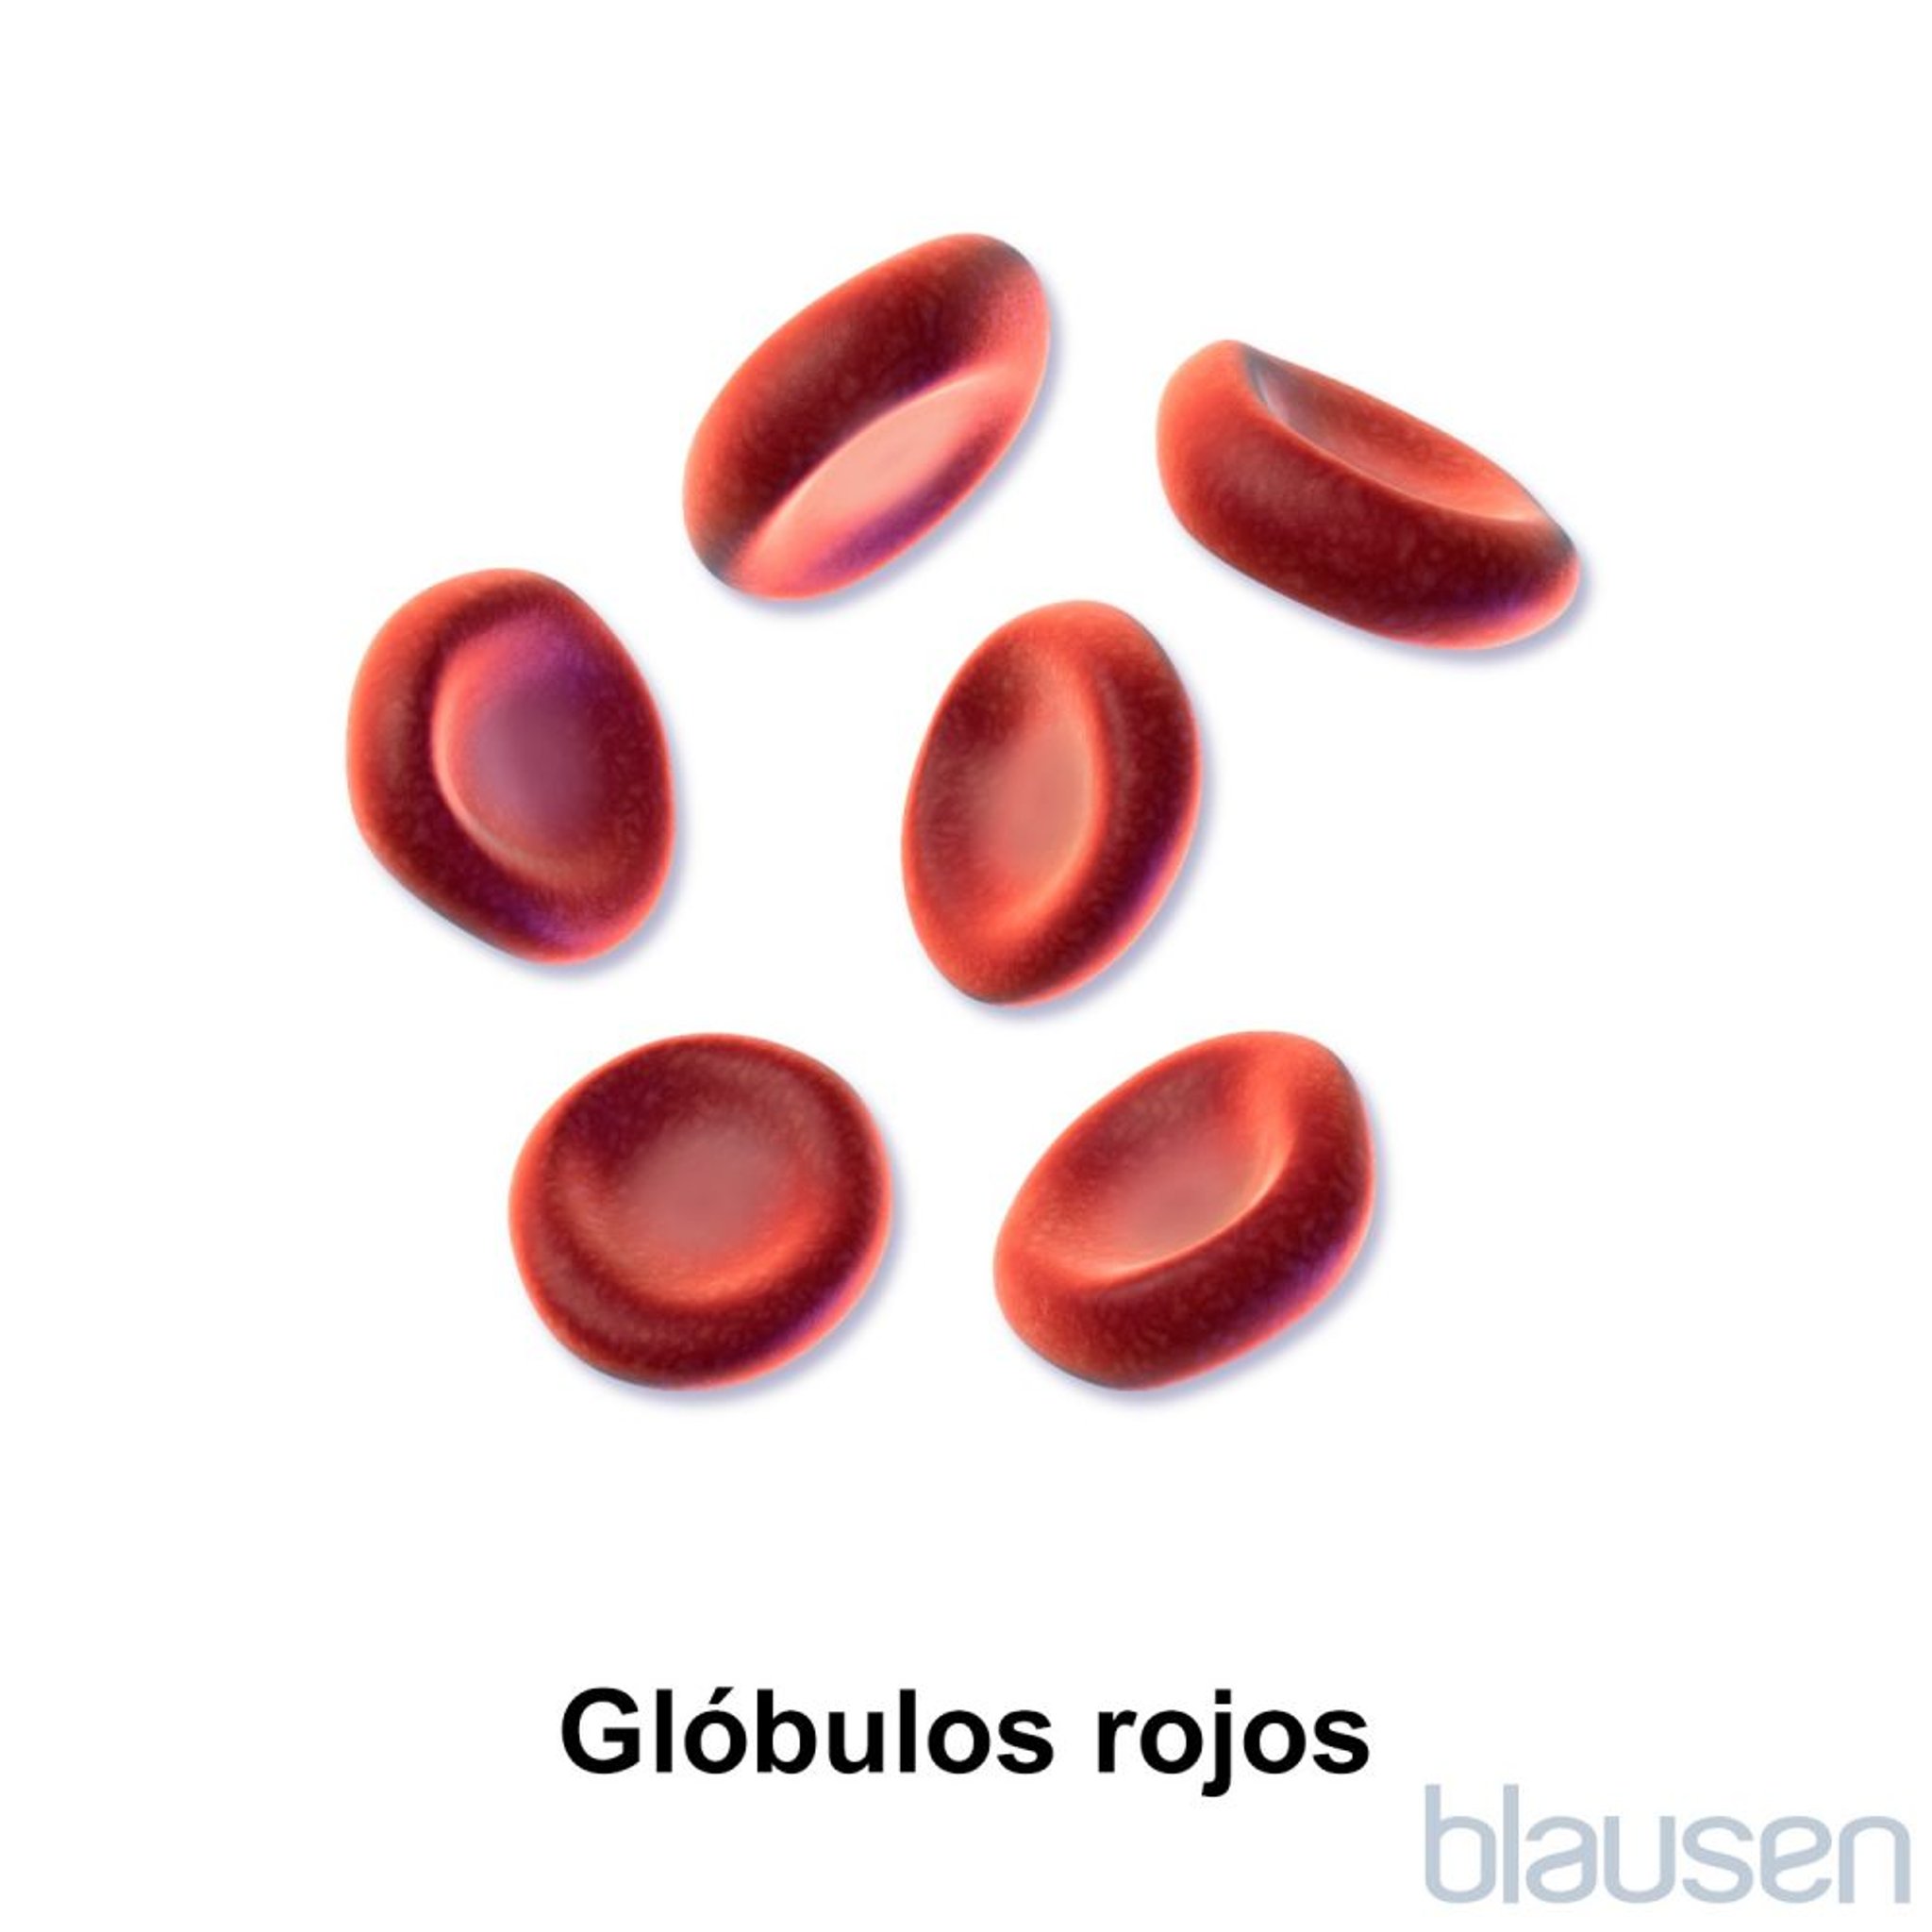 Glóbulos rojos (eritrocitos)